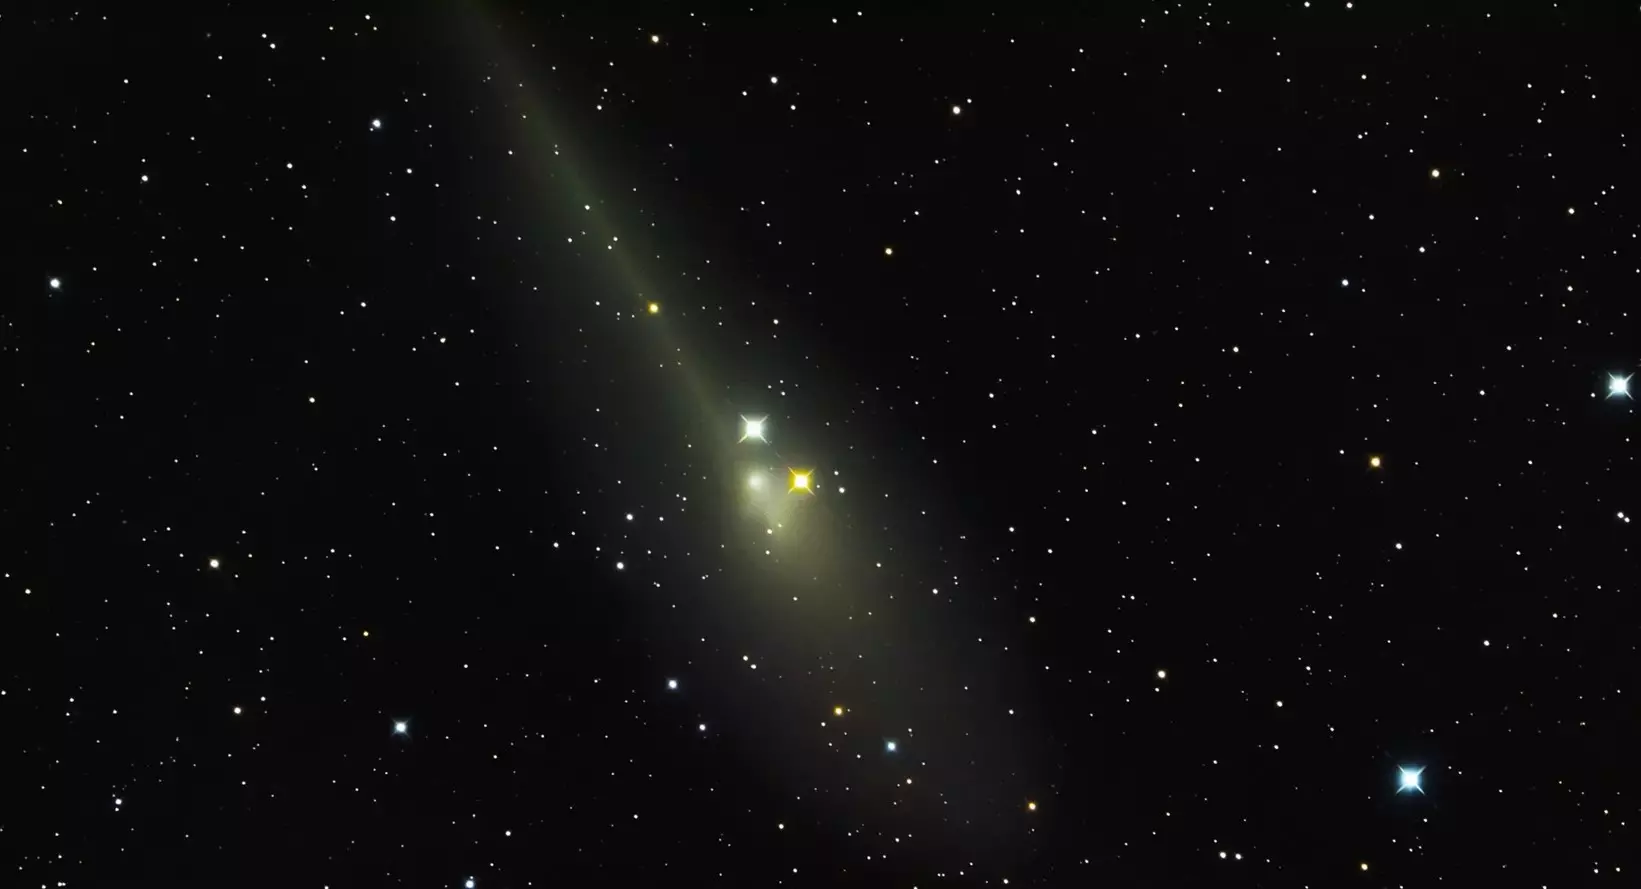 La cometa C/2011 L4 Panstarrs